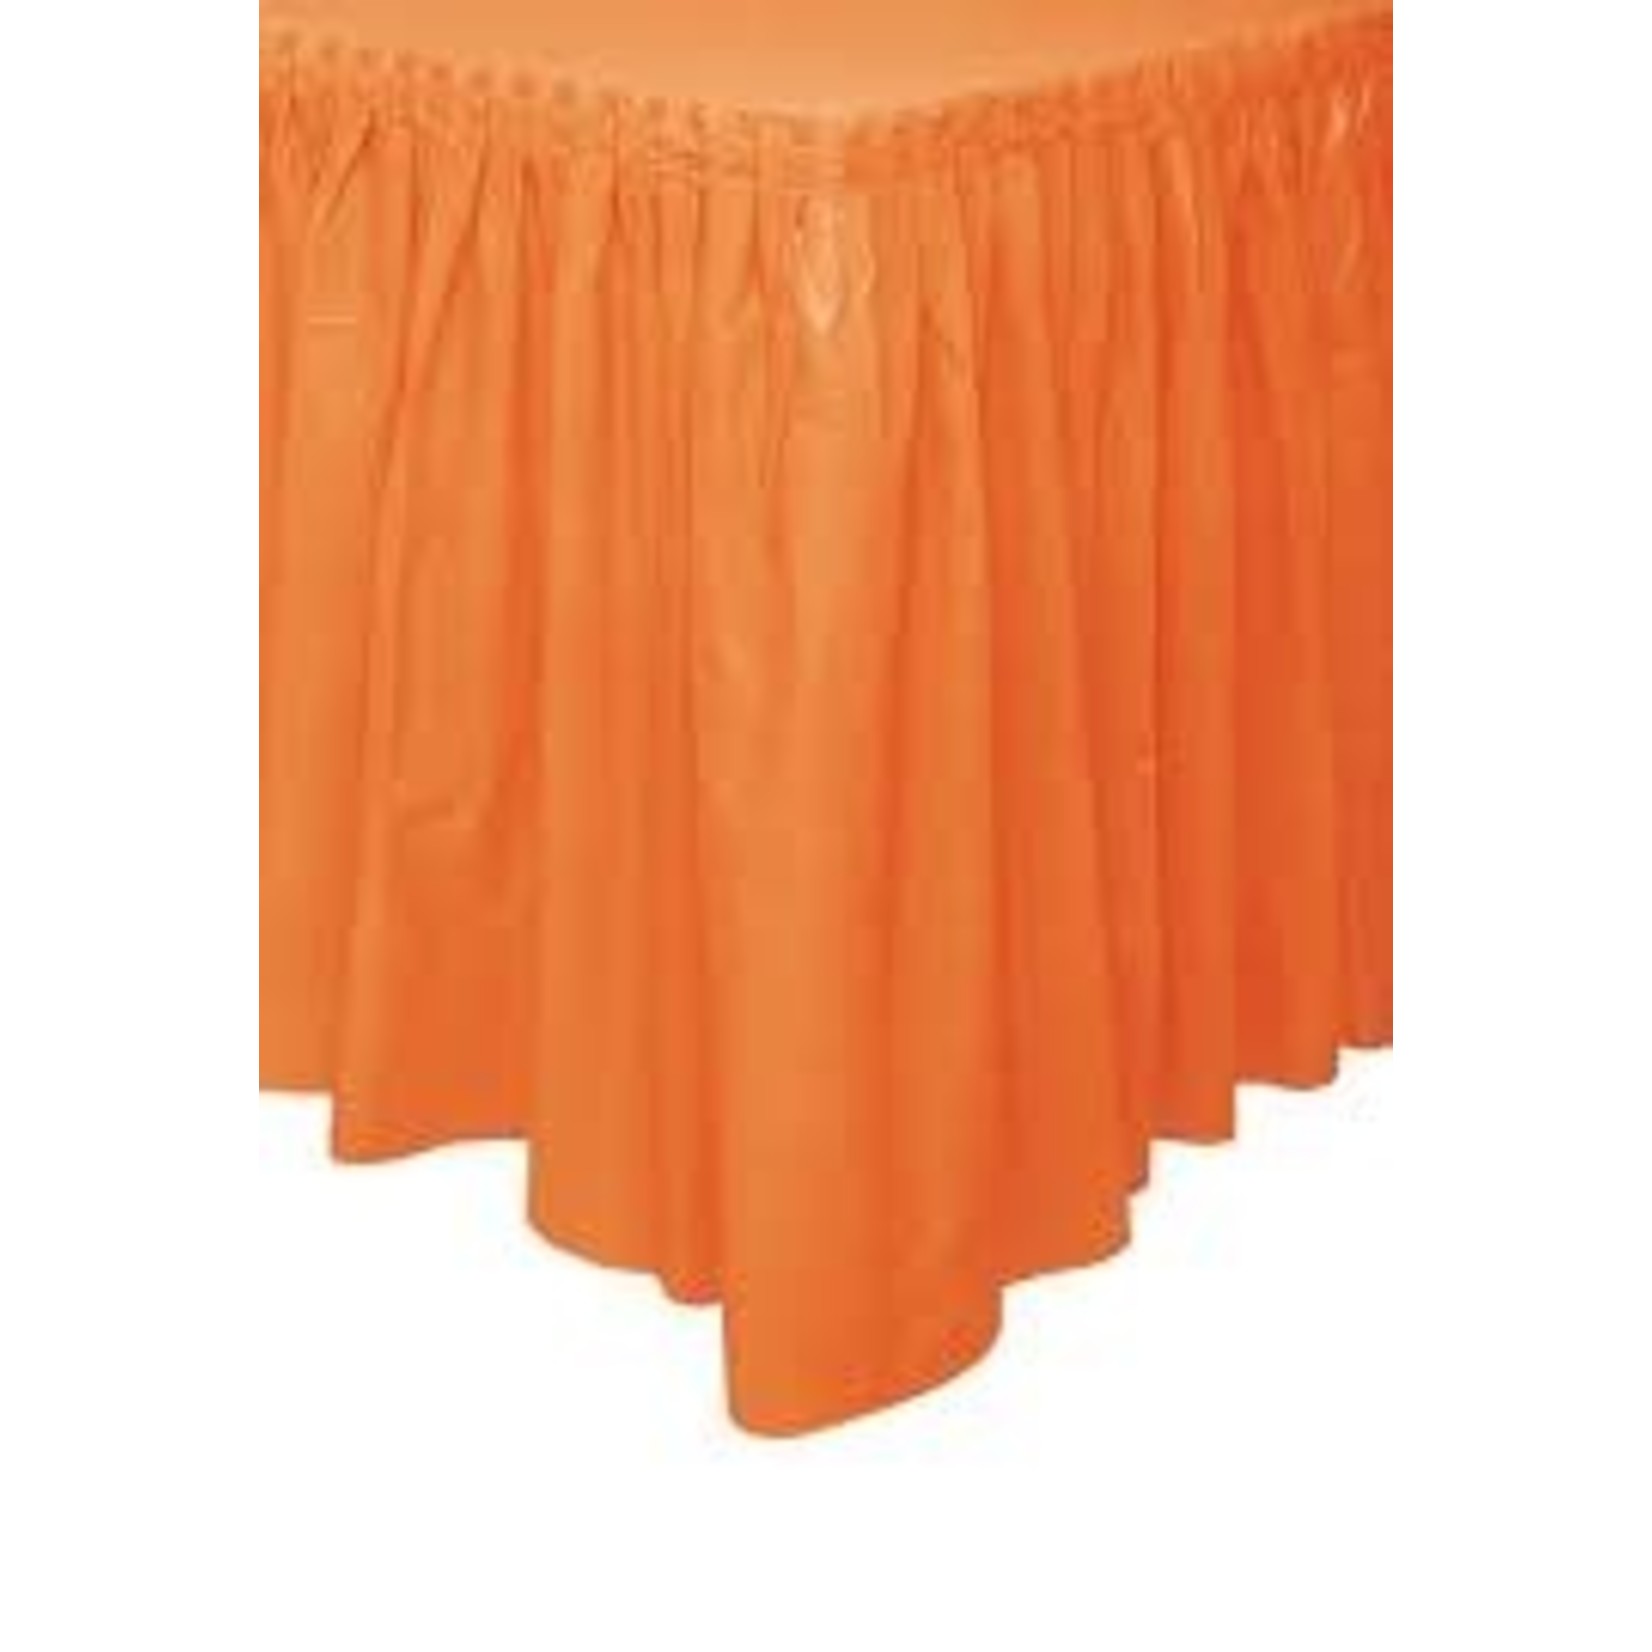 Orange Plastic Tableskirt